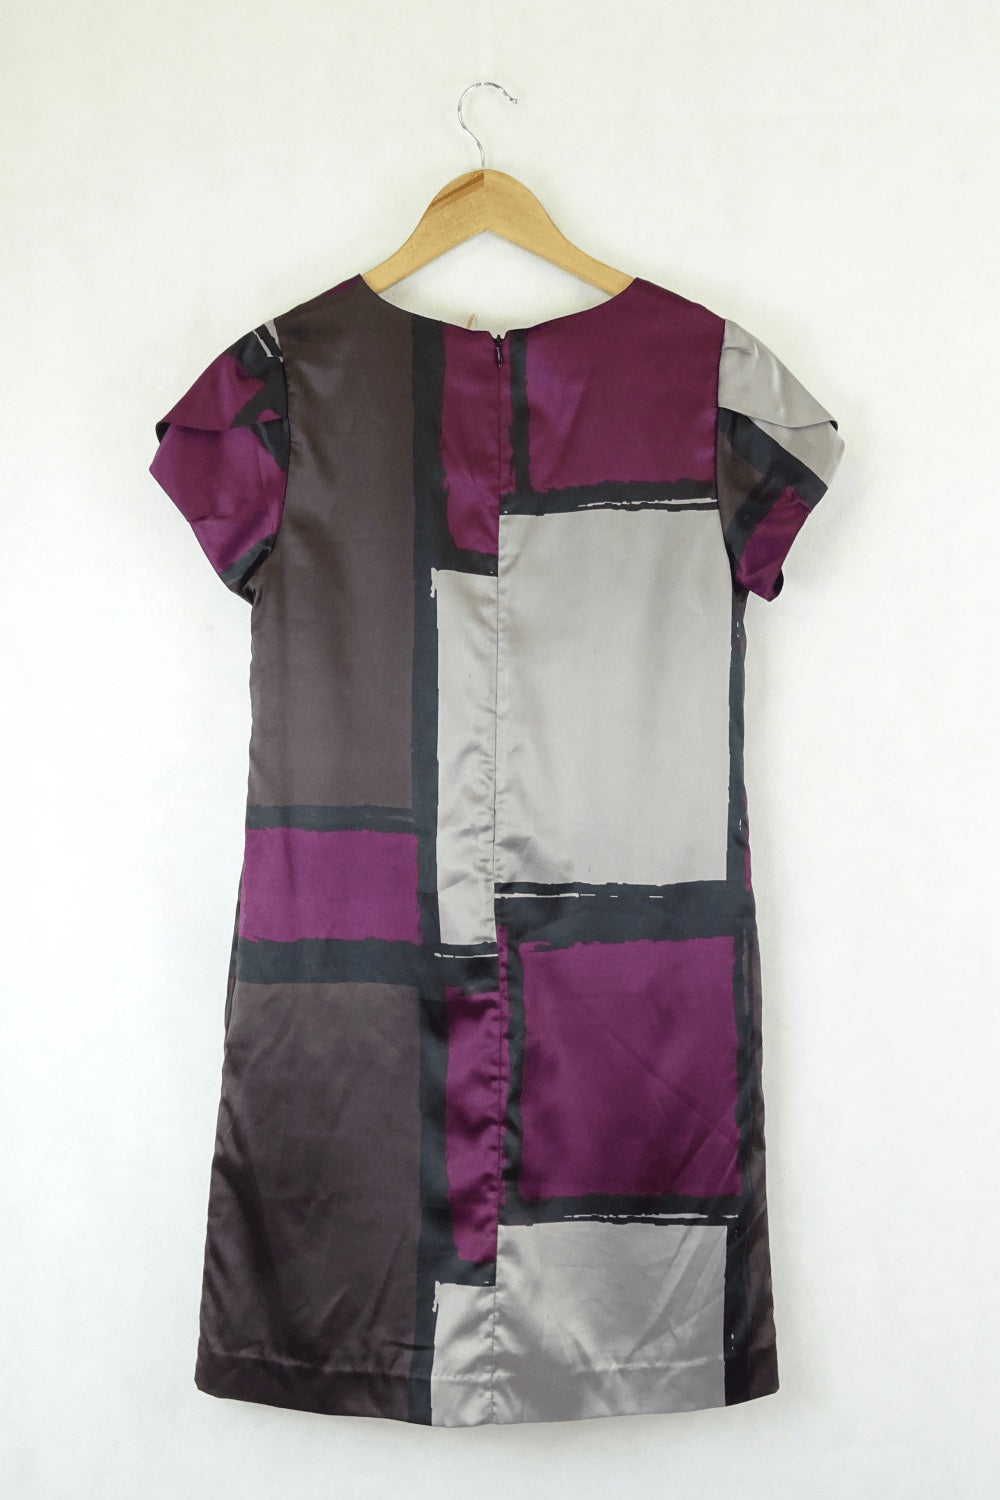 Barkins Geometric Purple Shaped Dress 10